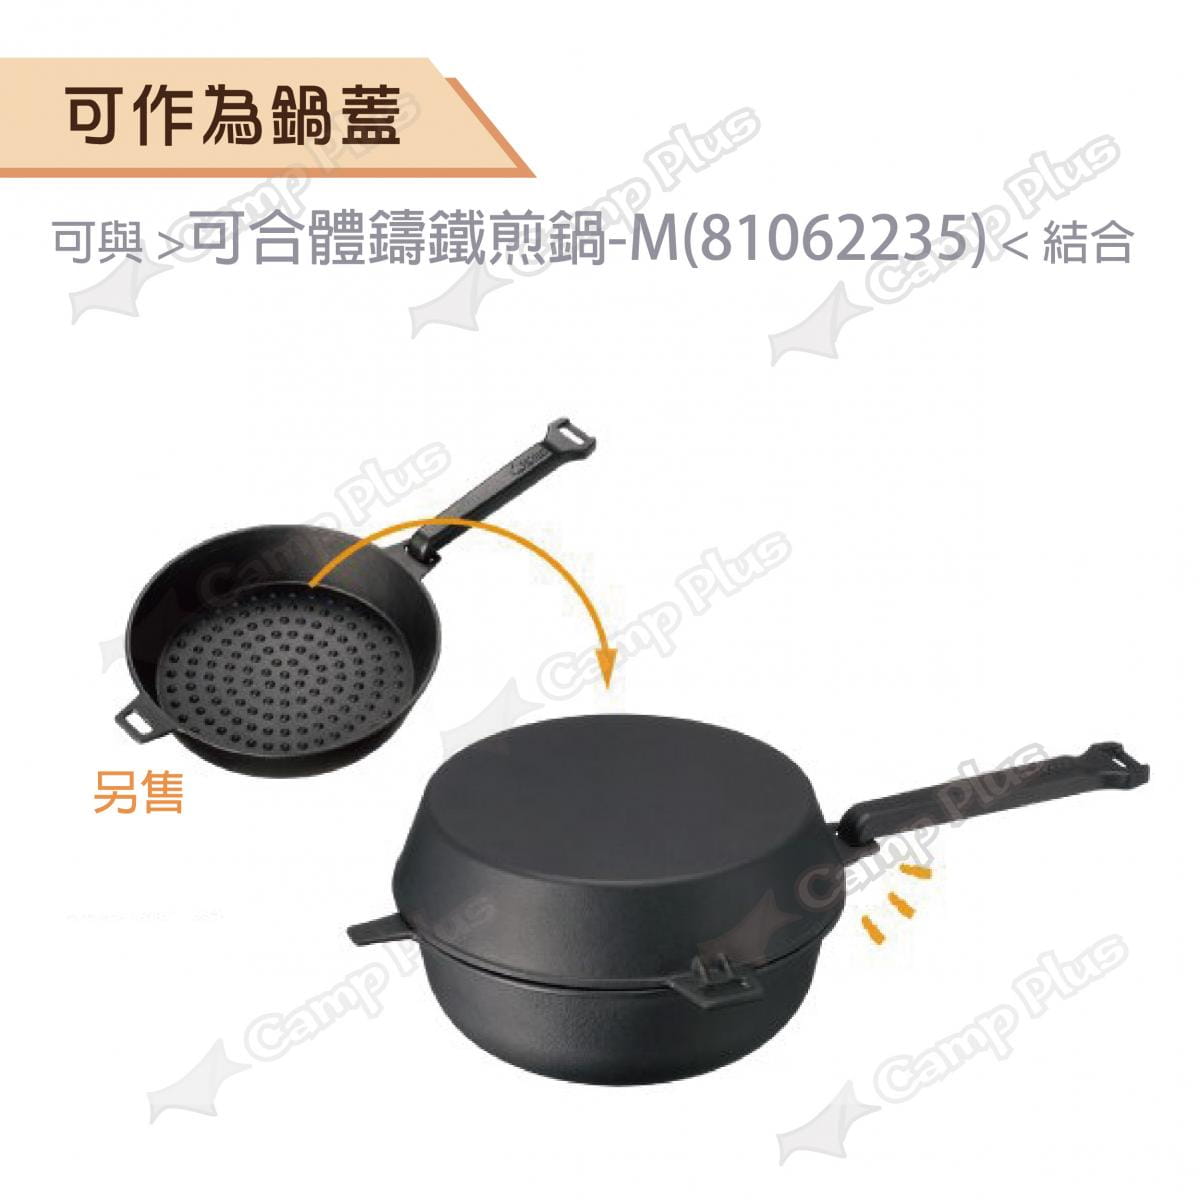 【日本LOGOS】 可合體鑄鐵深煎鍋M_LG81062236 (悠遊戶外) 1